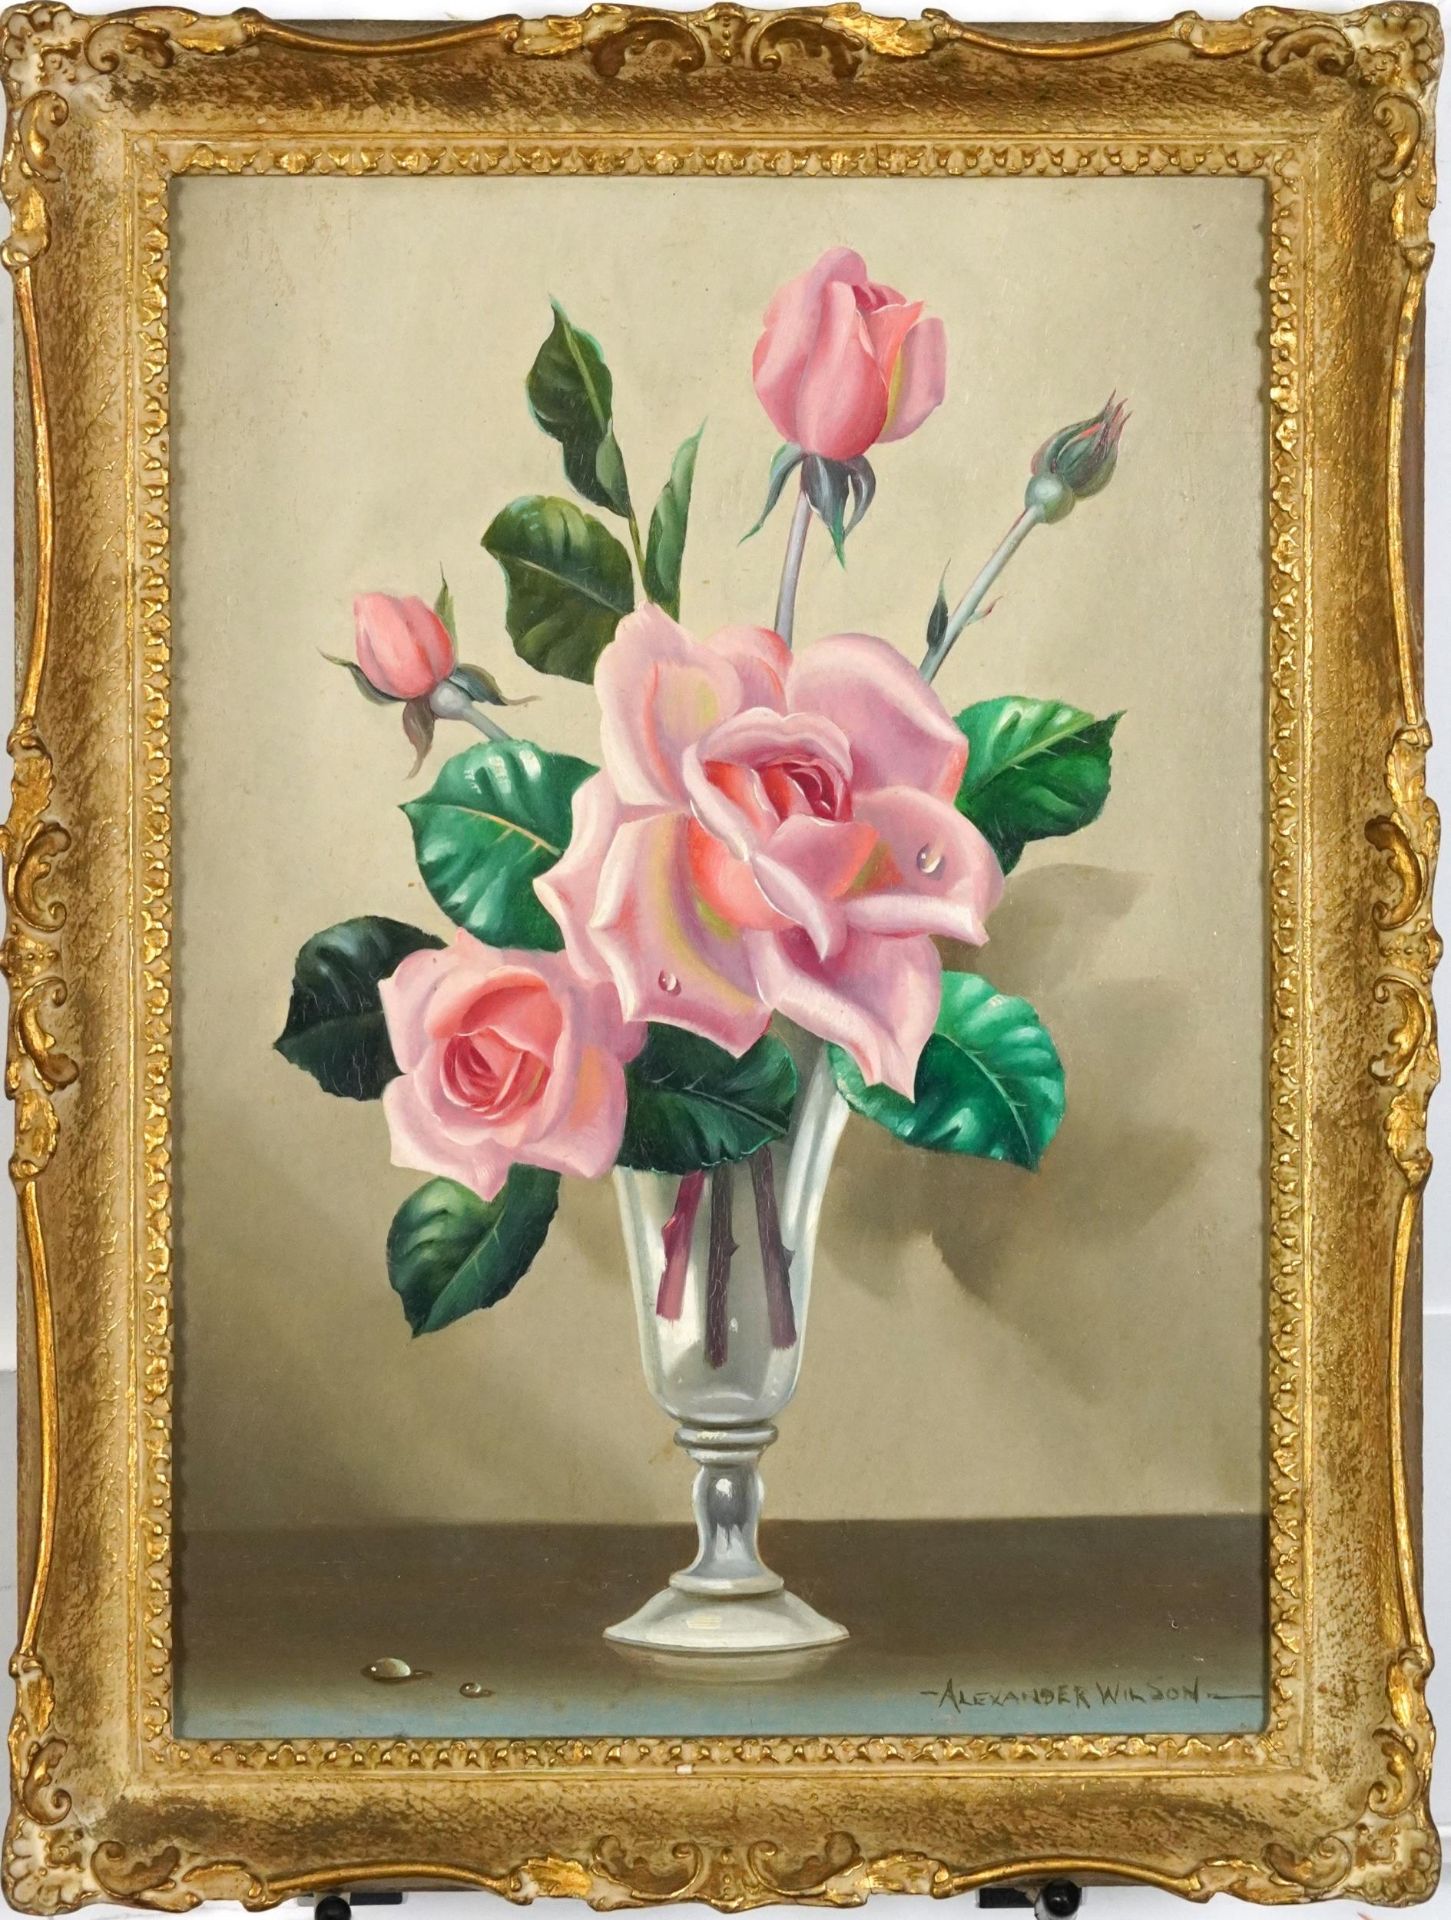 Alexander Wilson - Roses in a vase, oil on board, framed, 34.5cm x 24.5cm excluding the frame : - Image 2 of 4